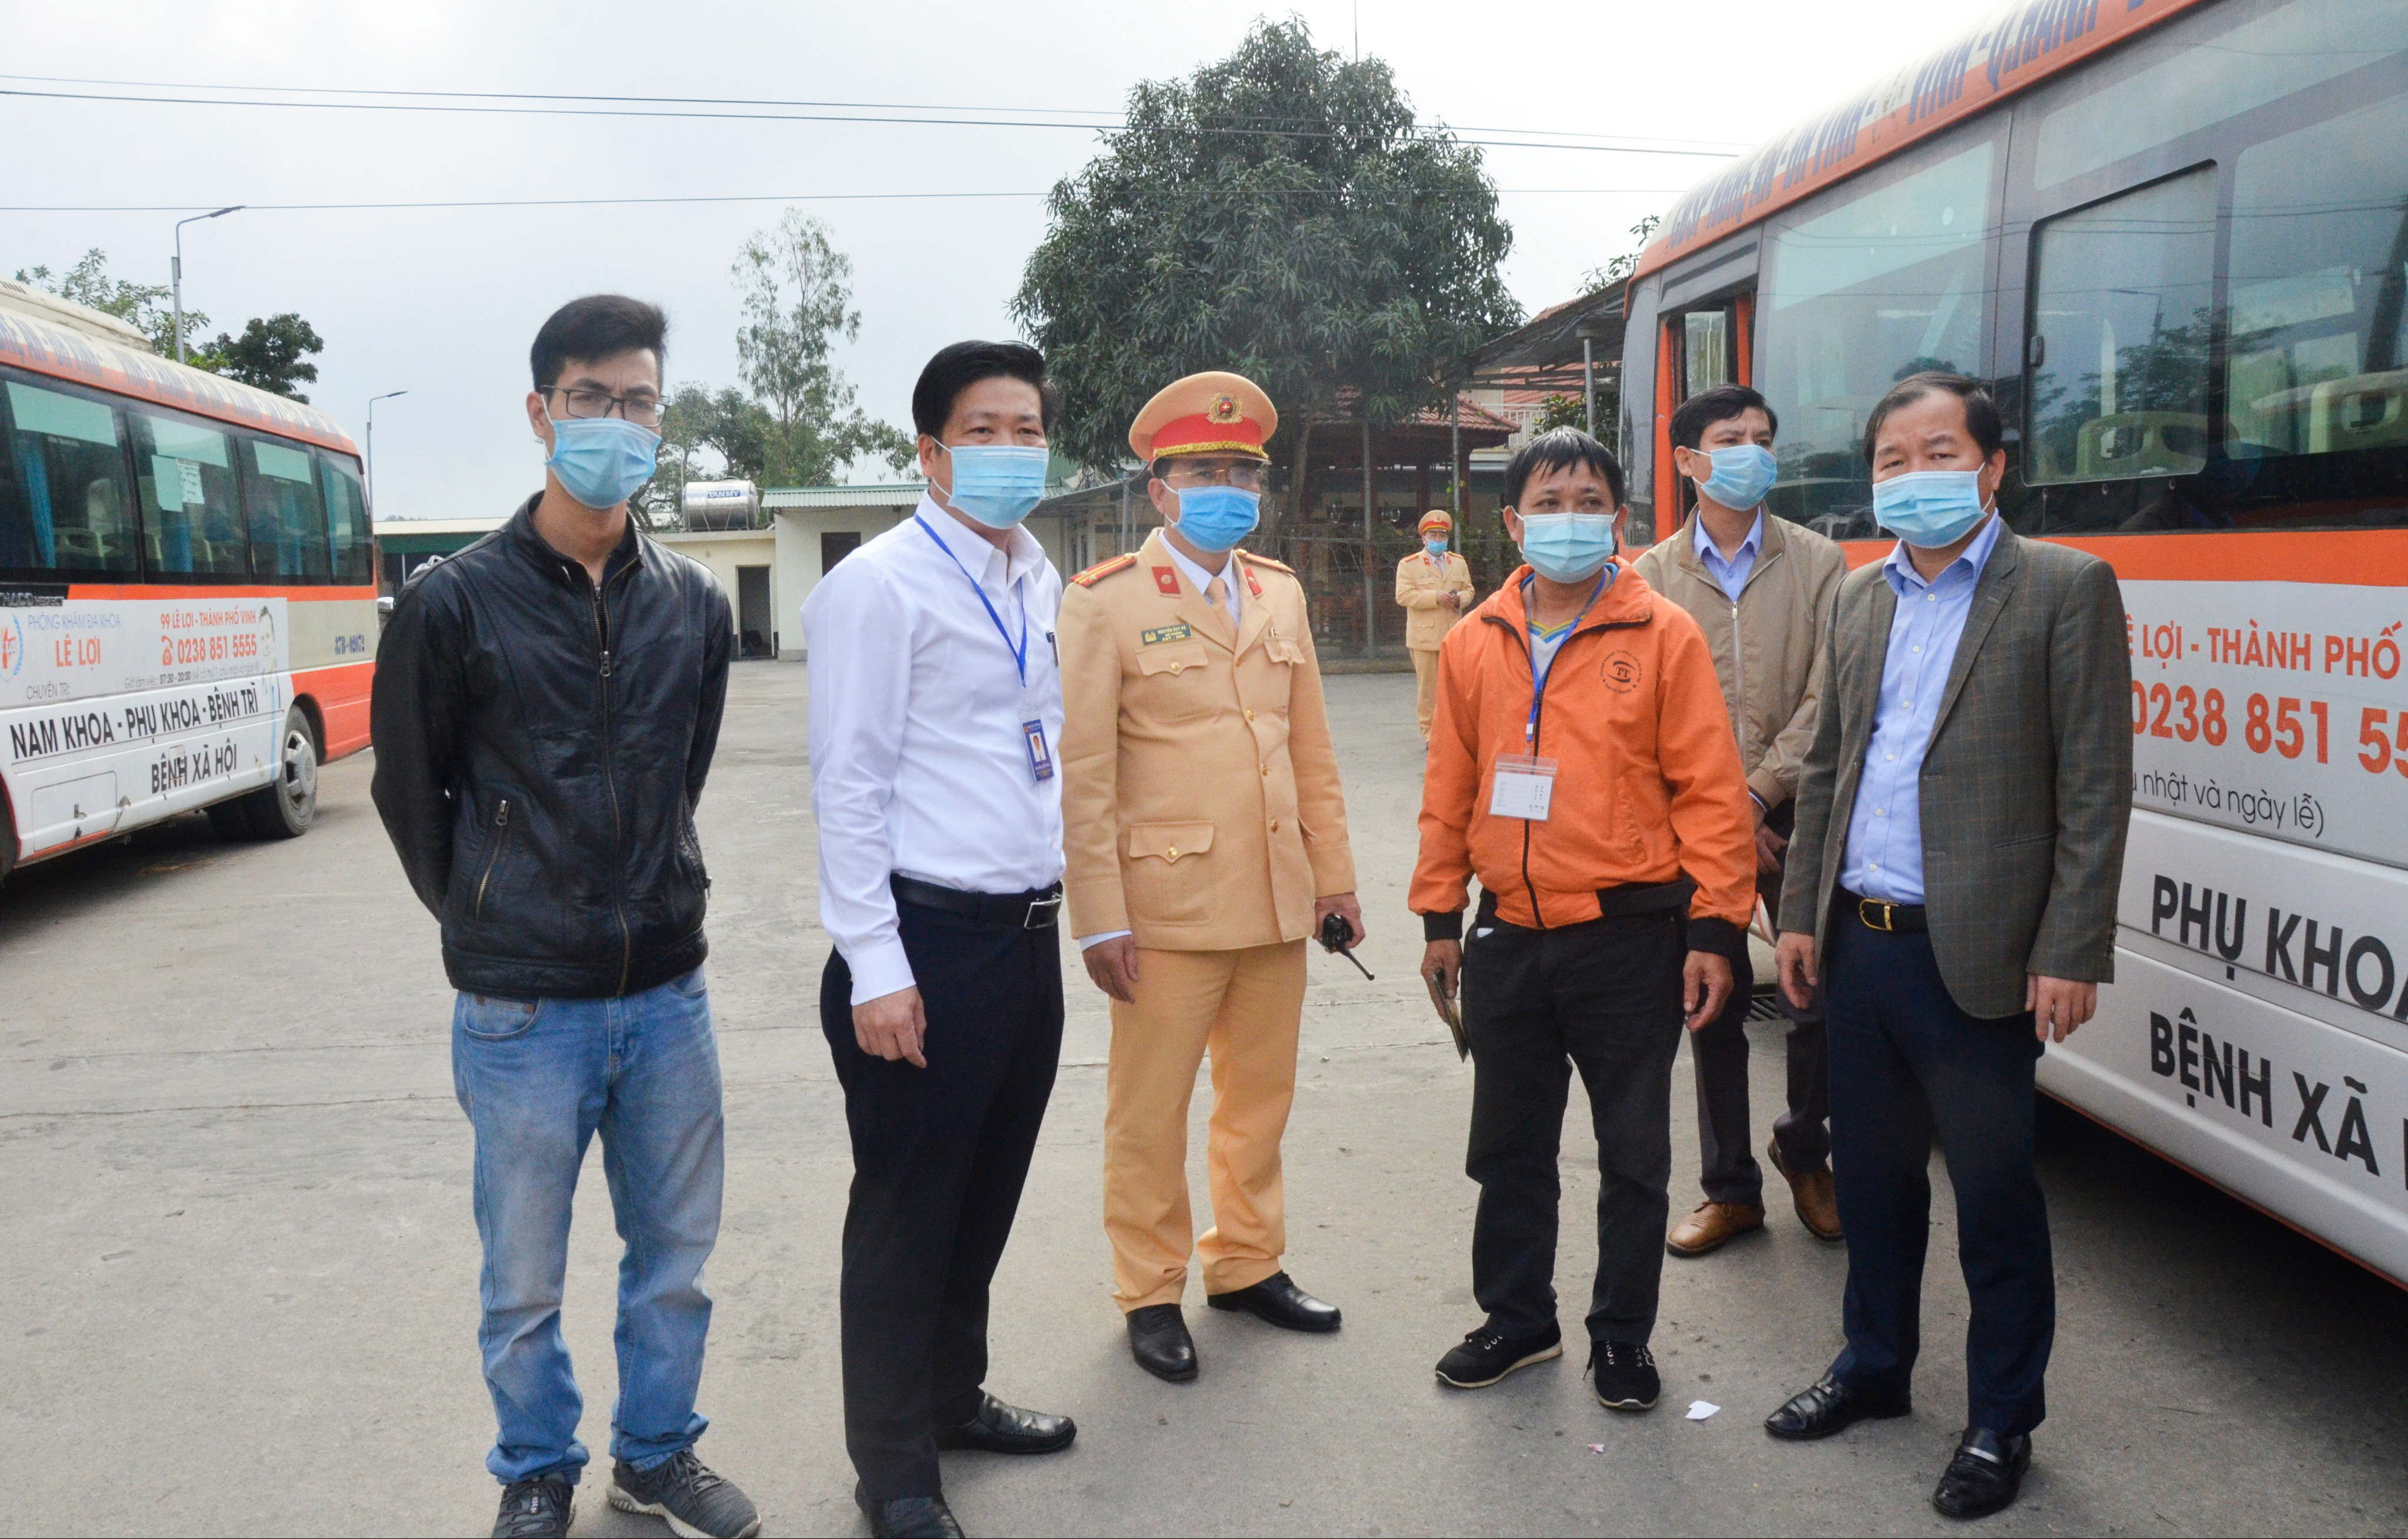 Đoàn trực tiếp kiểm tra hoạt động tại bến xe buýt Thạch Thành. Ảnh: Thanh Lê